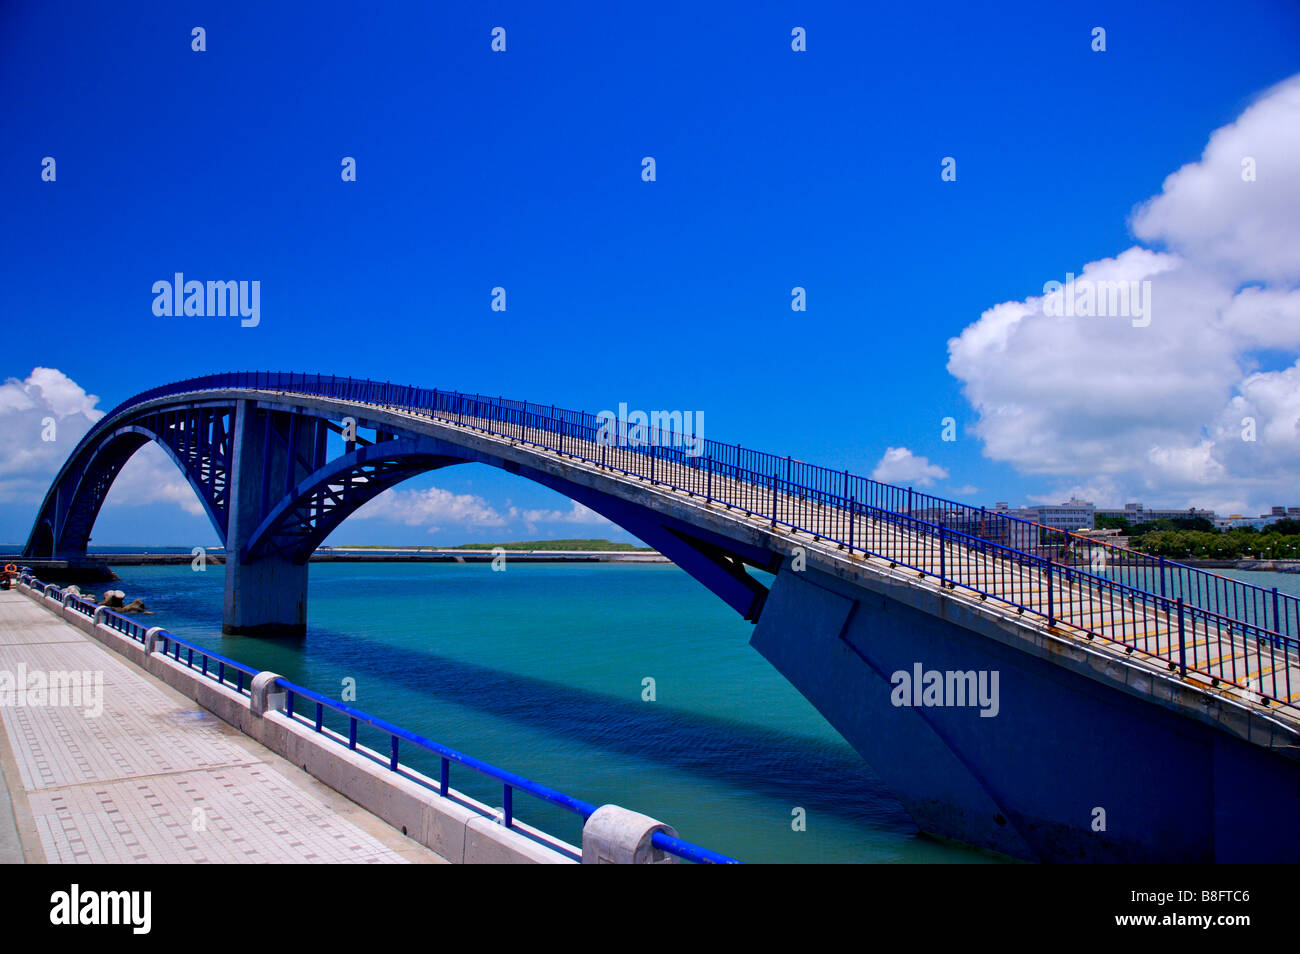 El puente de arco por encima del agua en Taiwán, Penghu Foto de stock